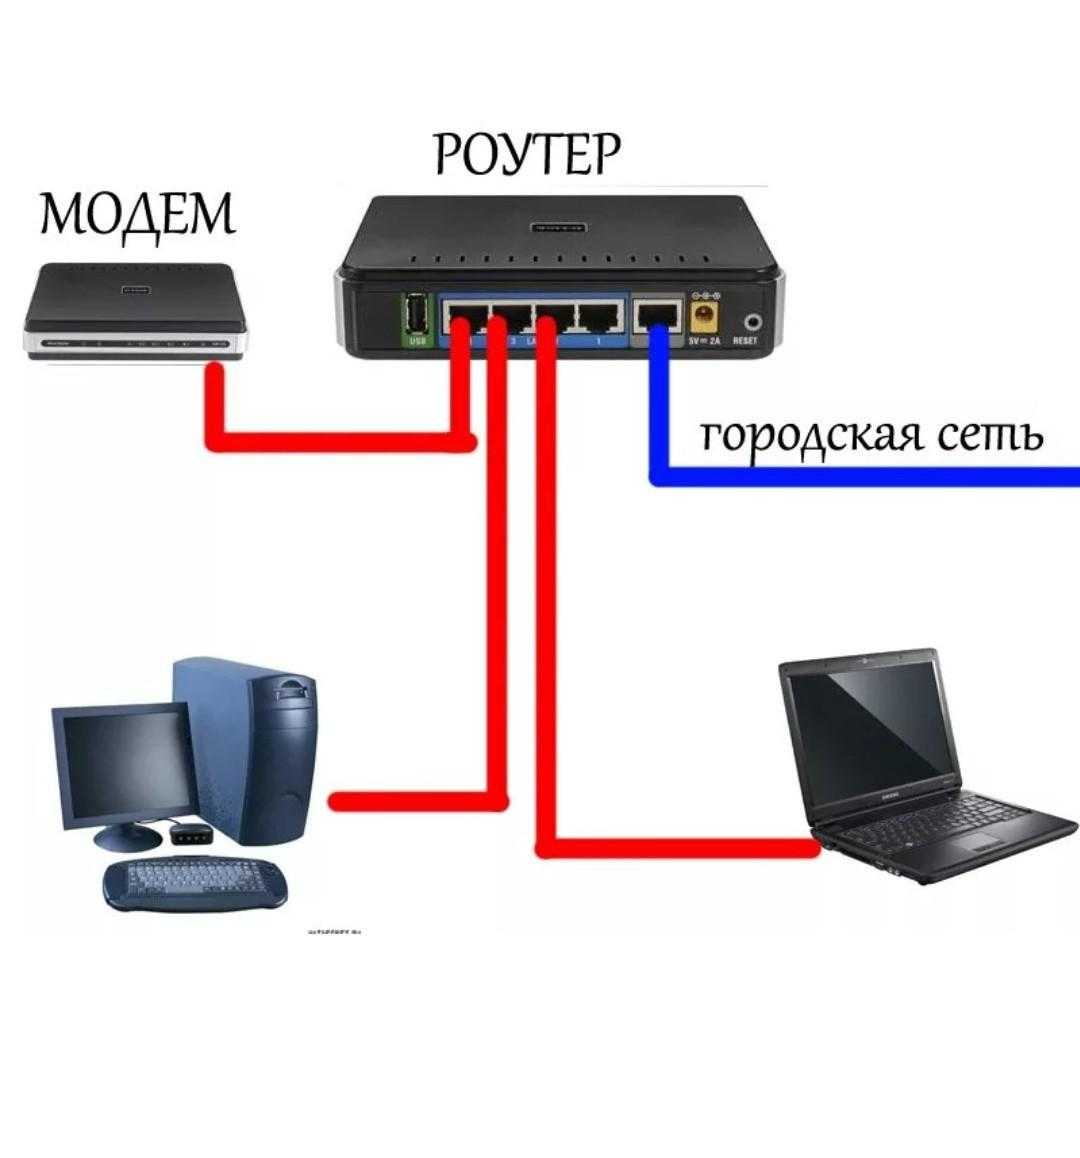 Прямое подключение интернета. Как подключается модем к компьютеру. Схема подключения модема. Как подключить второй компьютер к интернету через кабель к роутеру. Провод для подключения модема к роутеру.